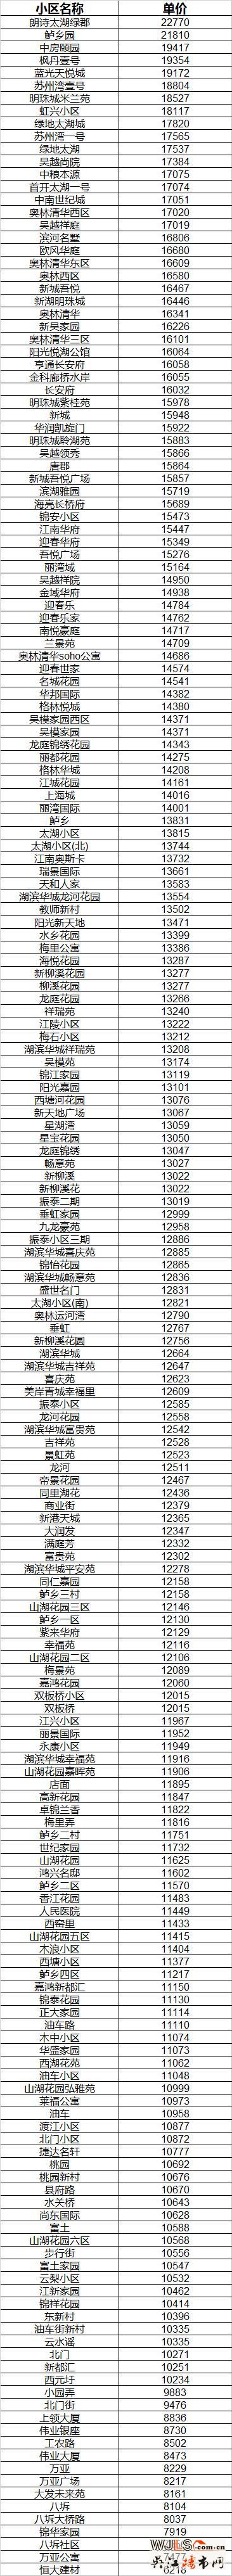 2017年吴江二手房市场价格分析